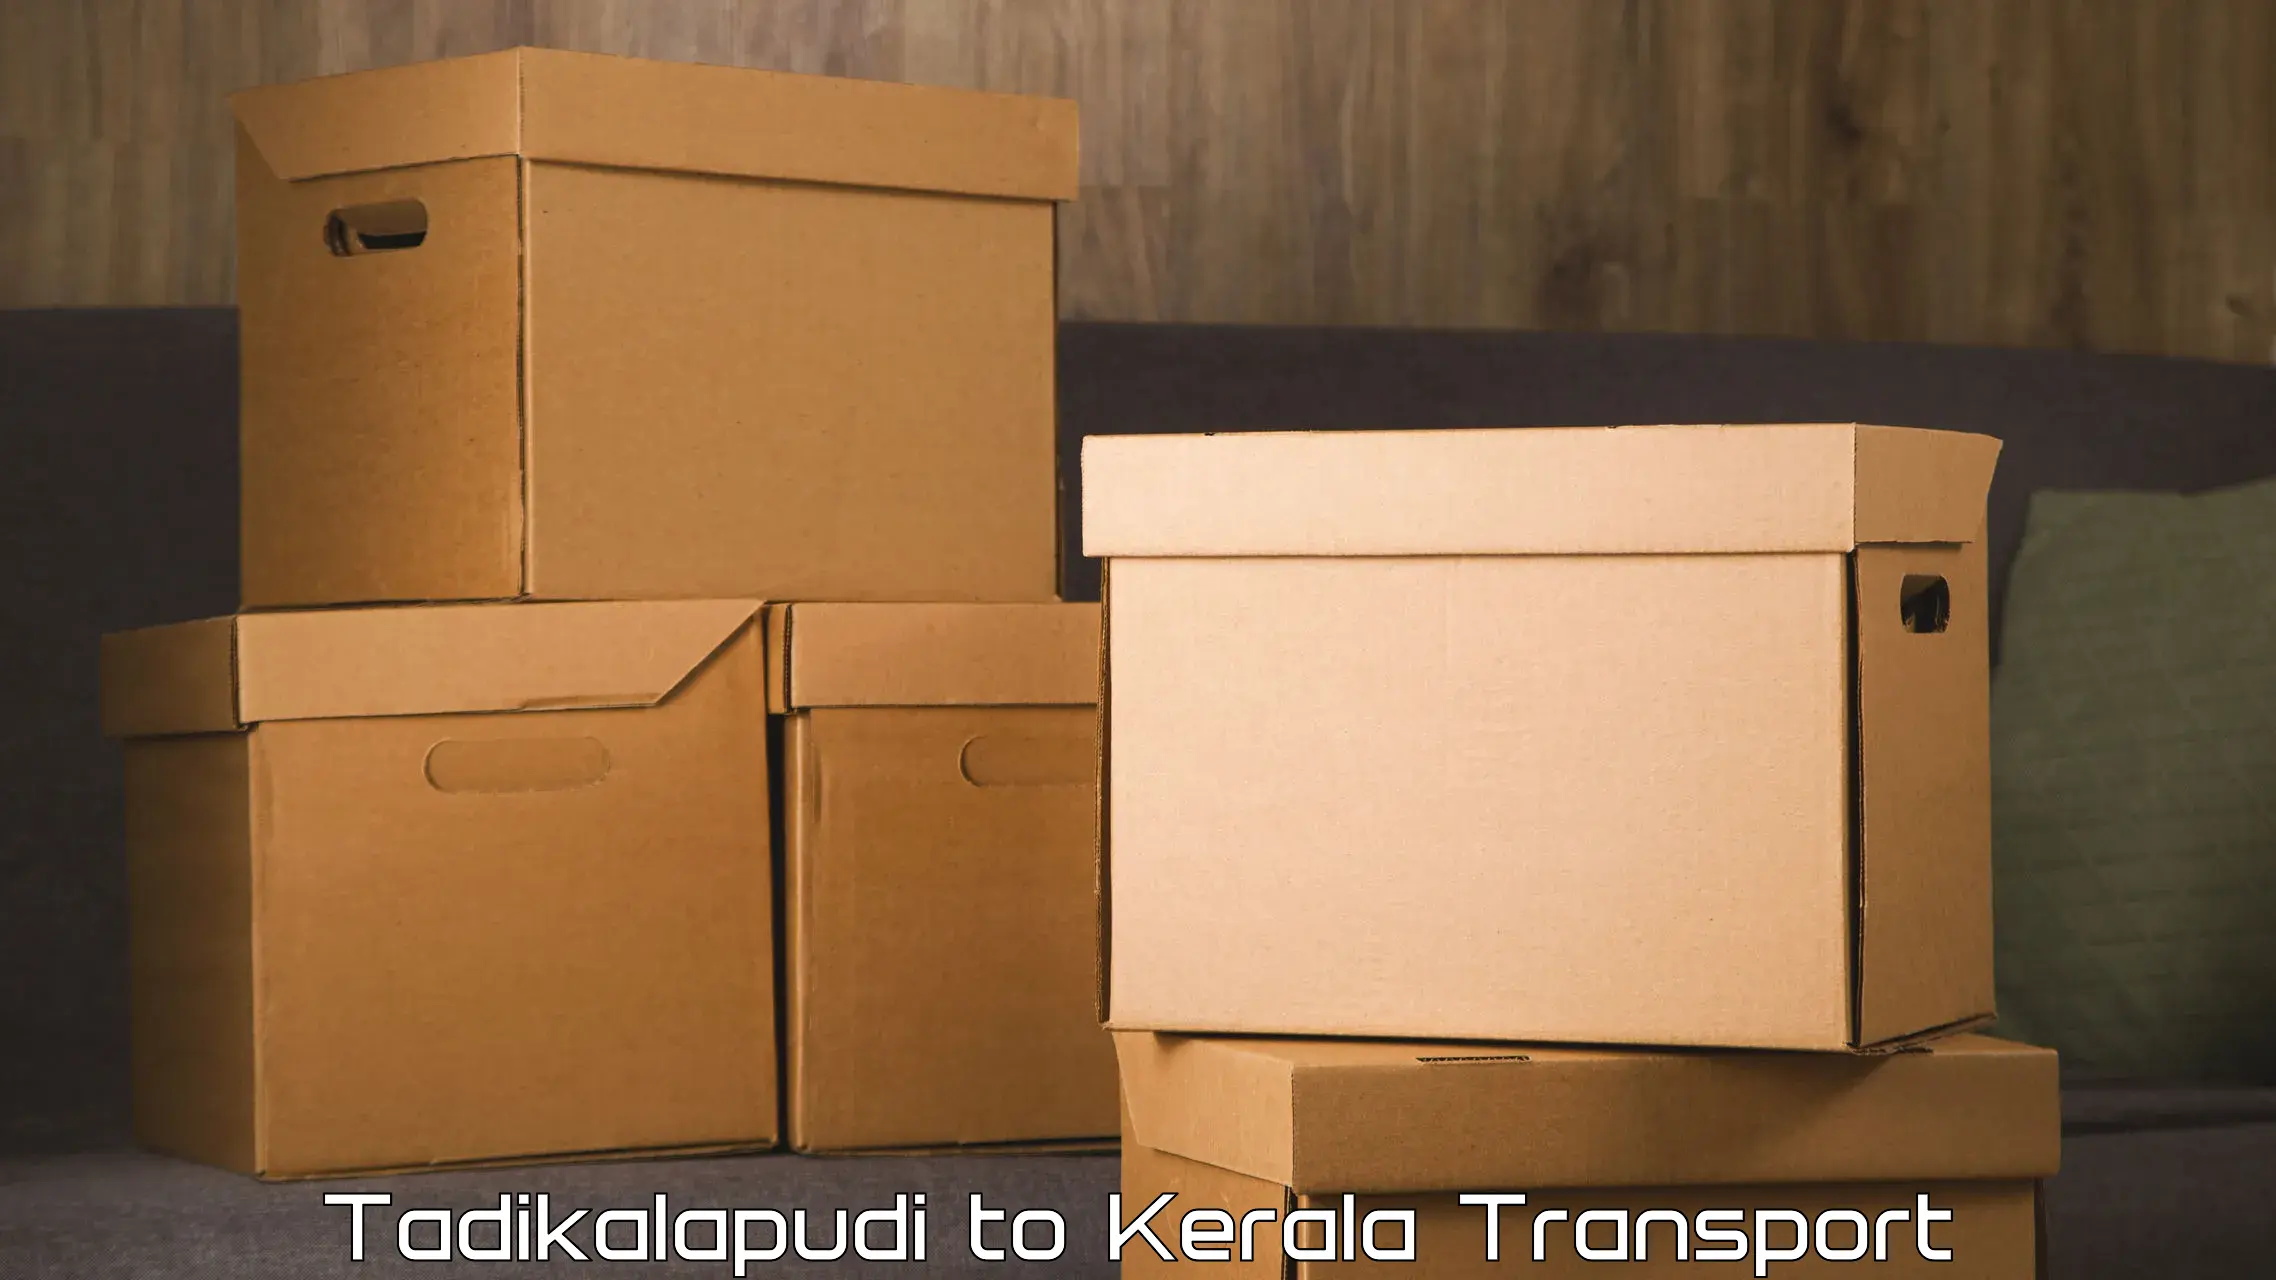 Commercial transport service Tadikalapudi to Payyanur